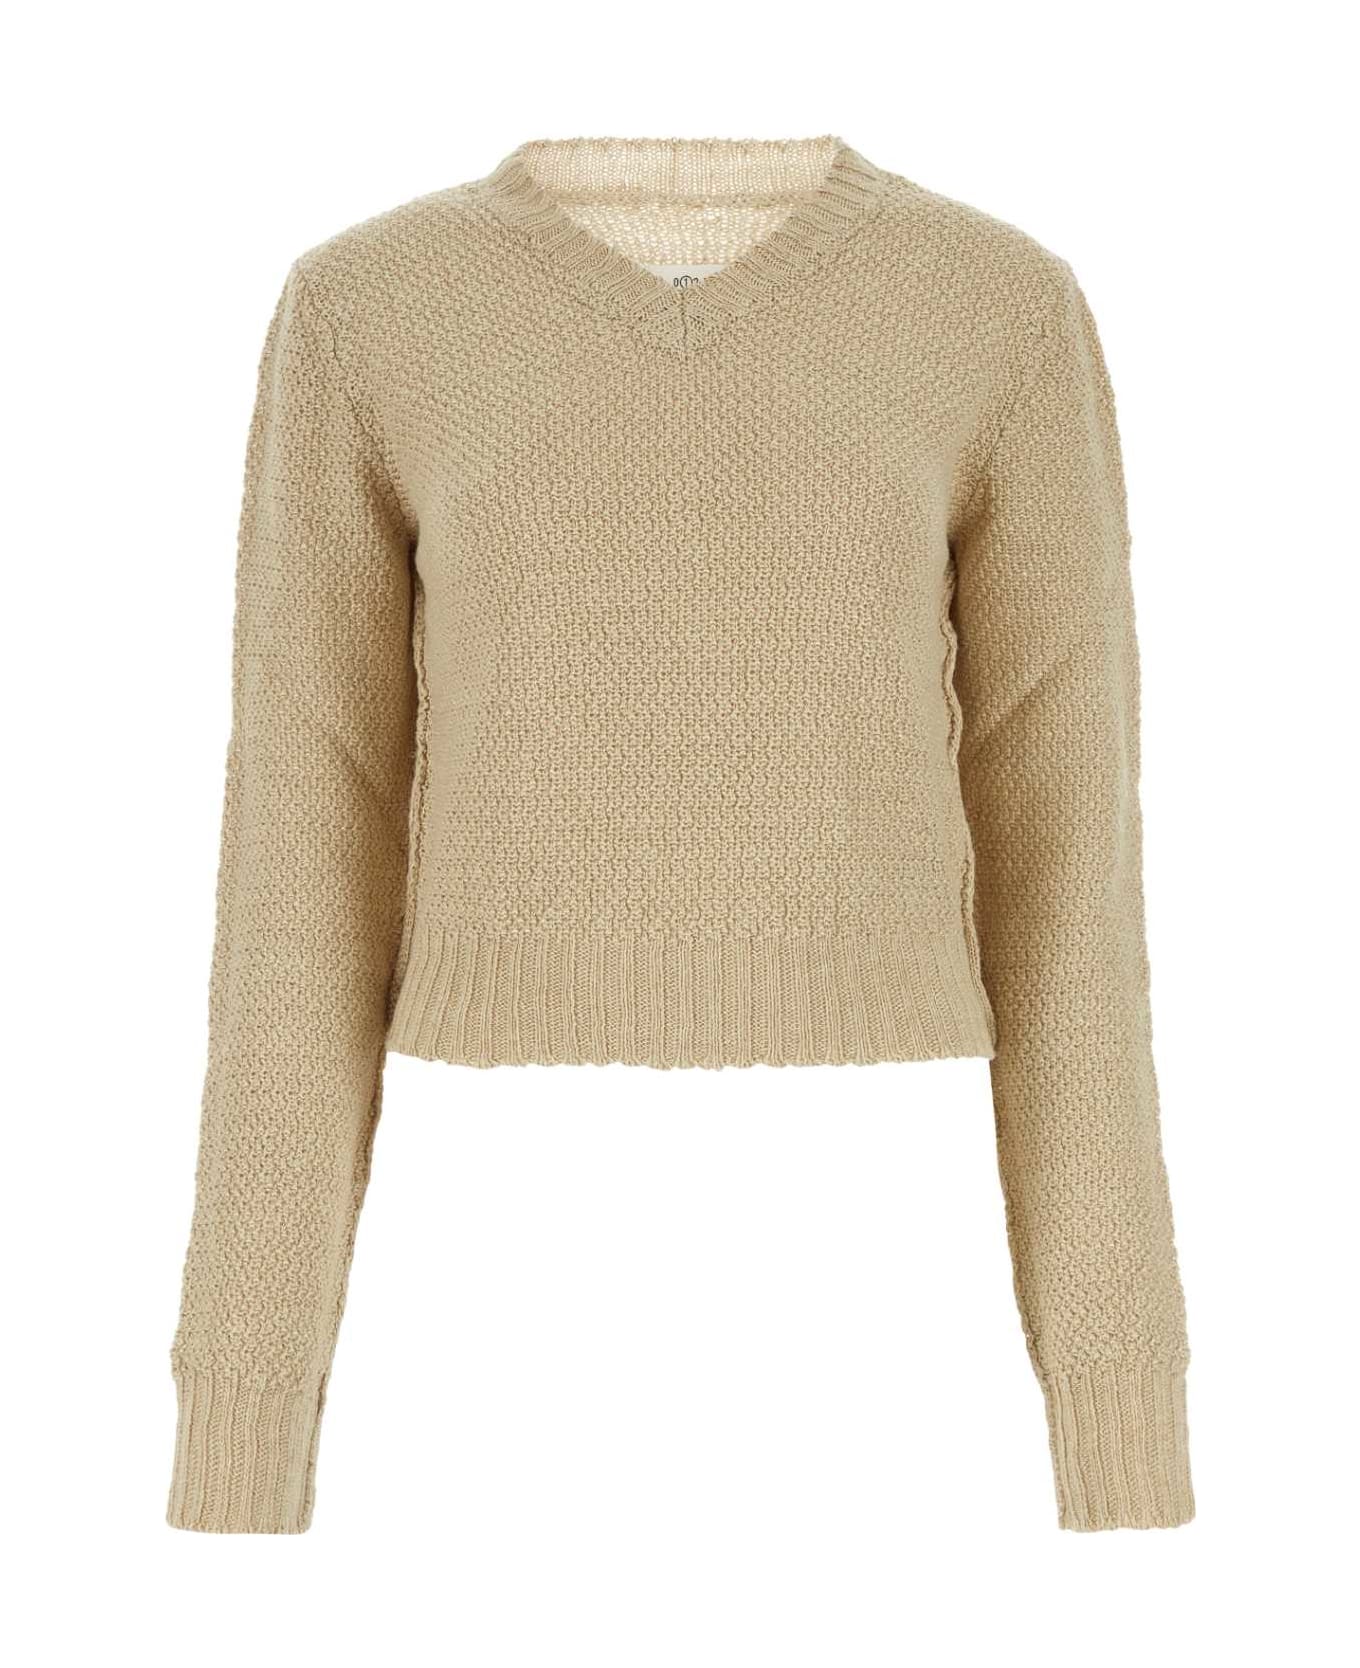 Maison Margiela Beige Hemp Sweater - 113